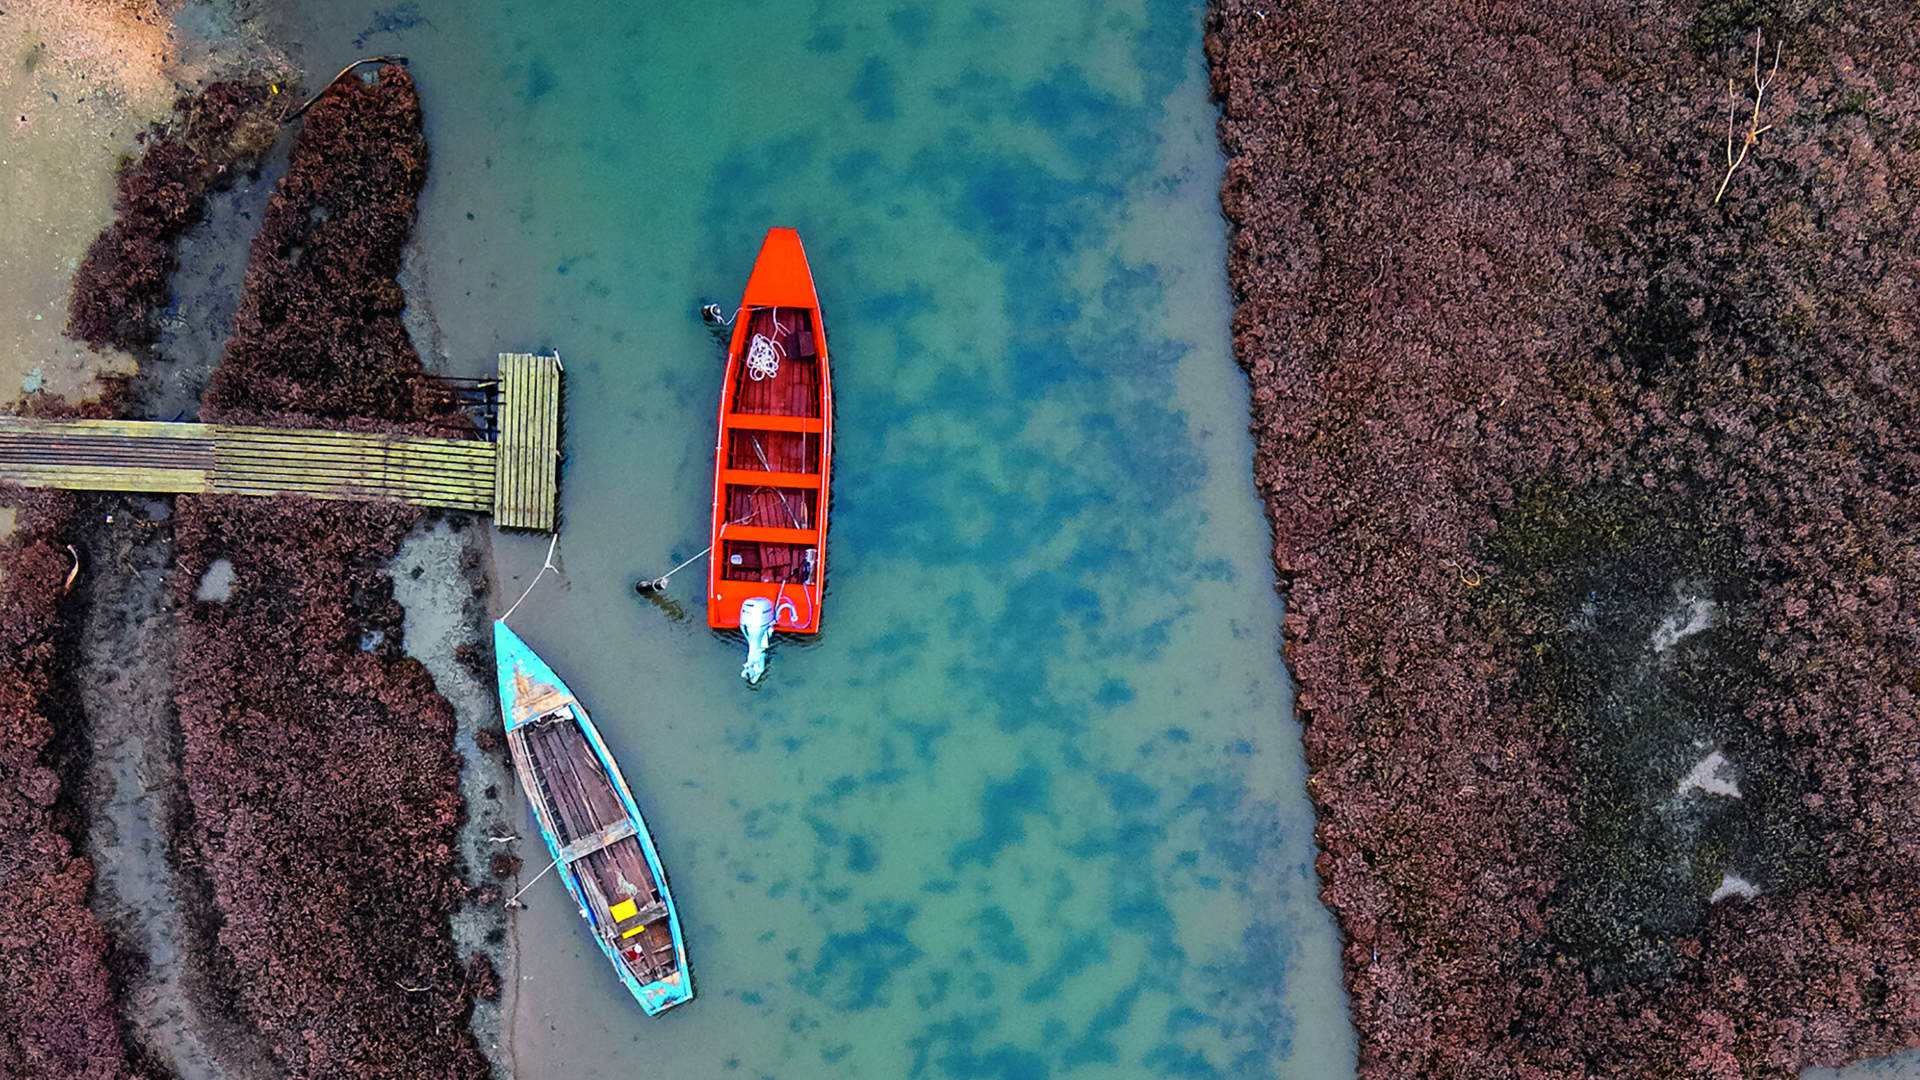 Ψαράδικες πλάβες, δεμένες σε προβλήτα, σε ένα από τα αμέτρητα κανάλια του Δέλτα Έβρου.